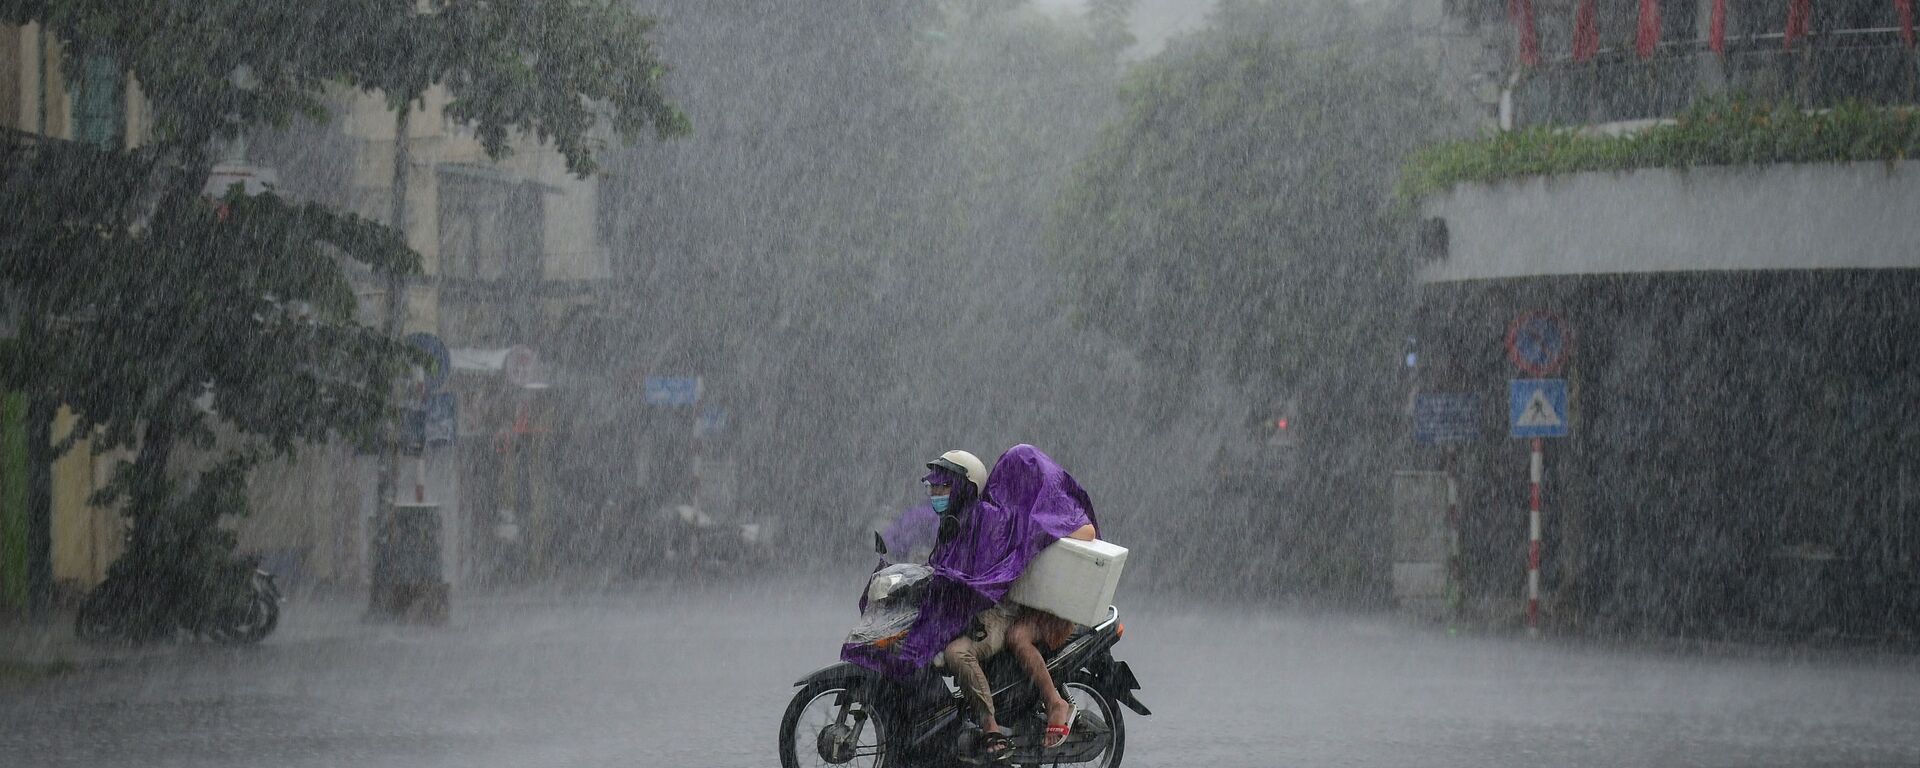 Người dân đi xe tay ga trong cơn mưa tầm tã ở Hà Nội, Việt Nam  - Sputnik Việt Nam, 1920, 12.09.2021